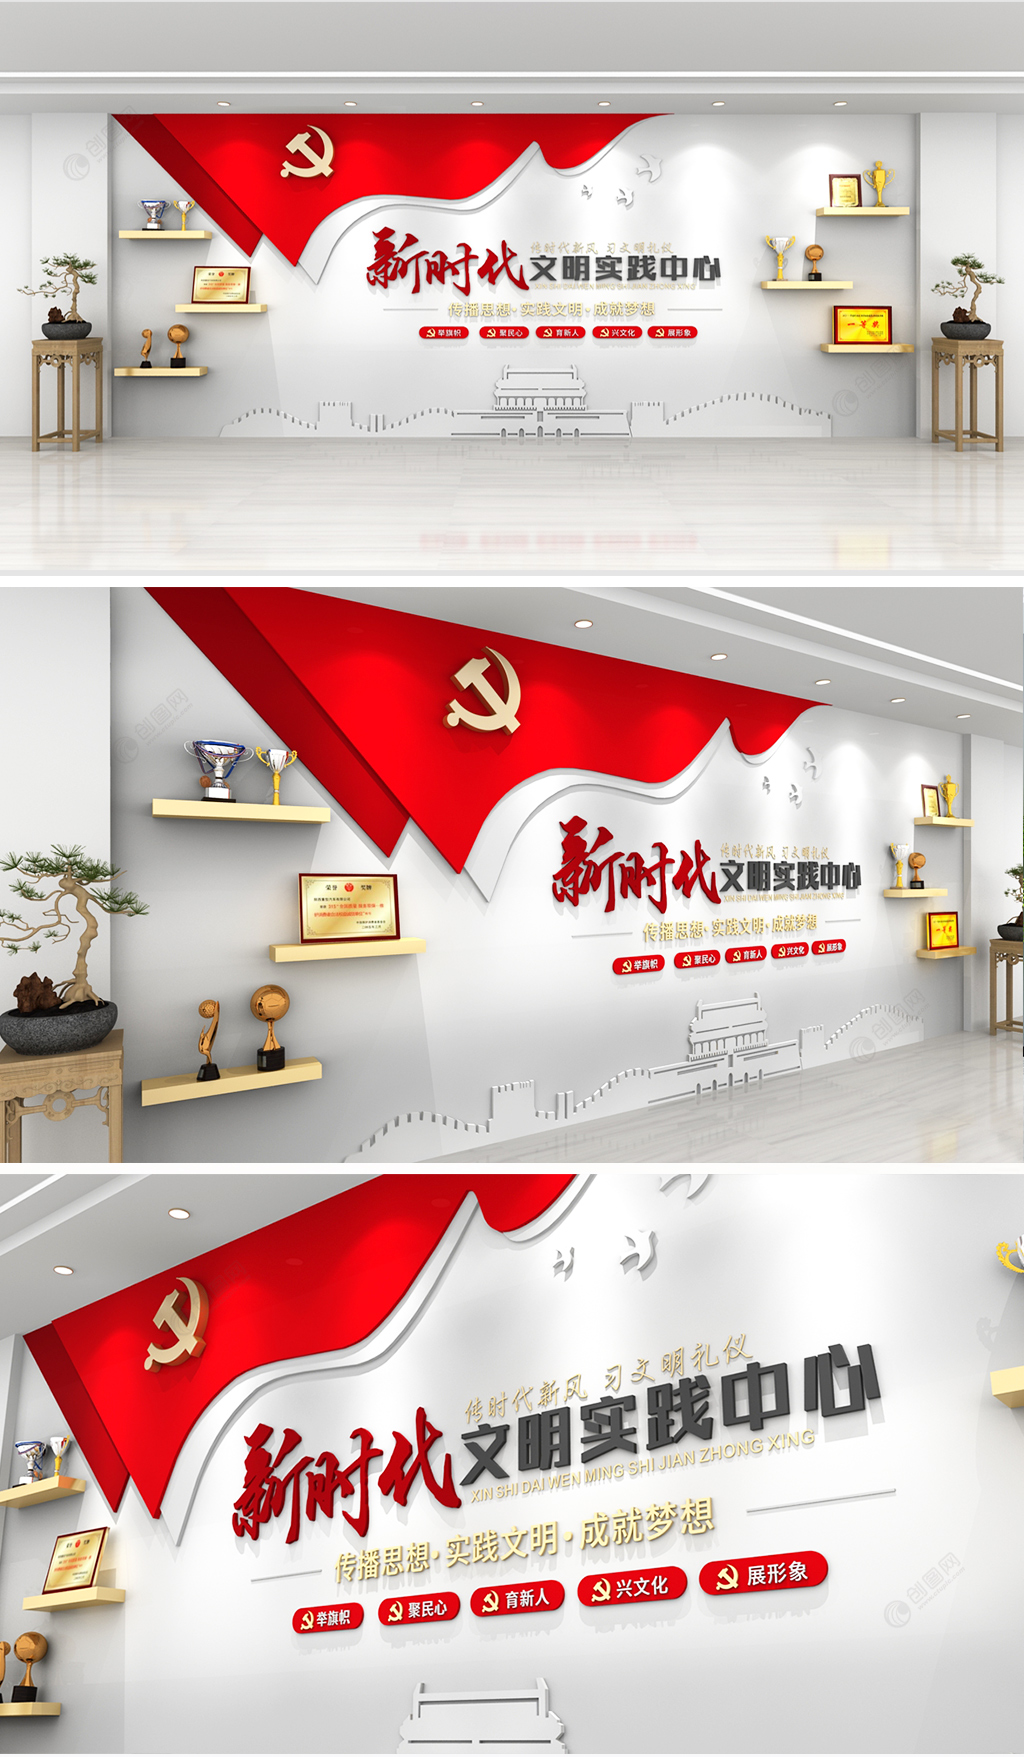 简约红色文化新时代文明实践中心党建文化墙设